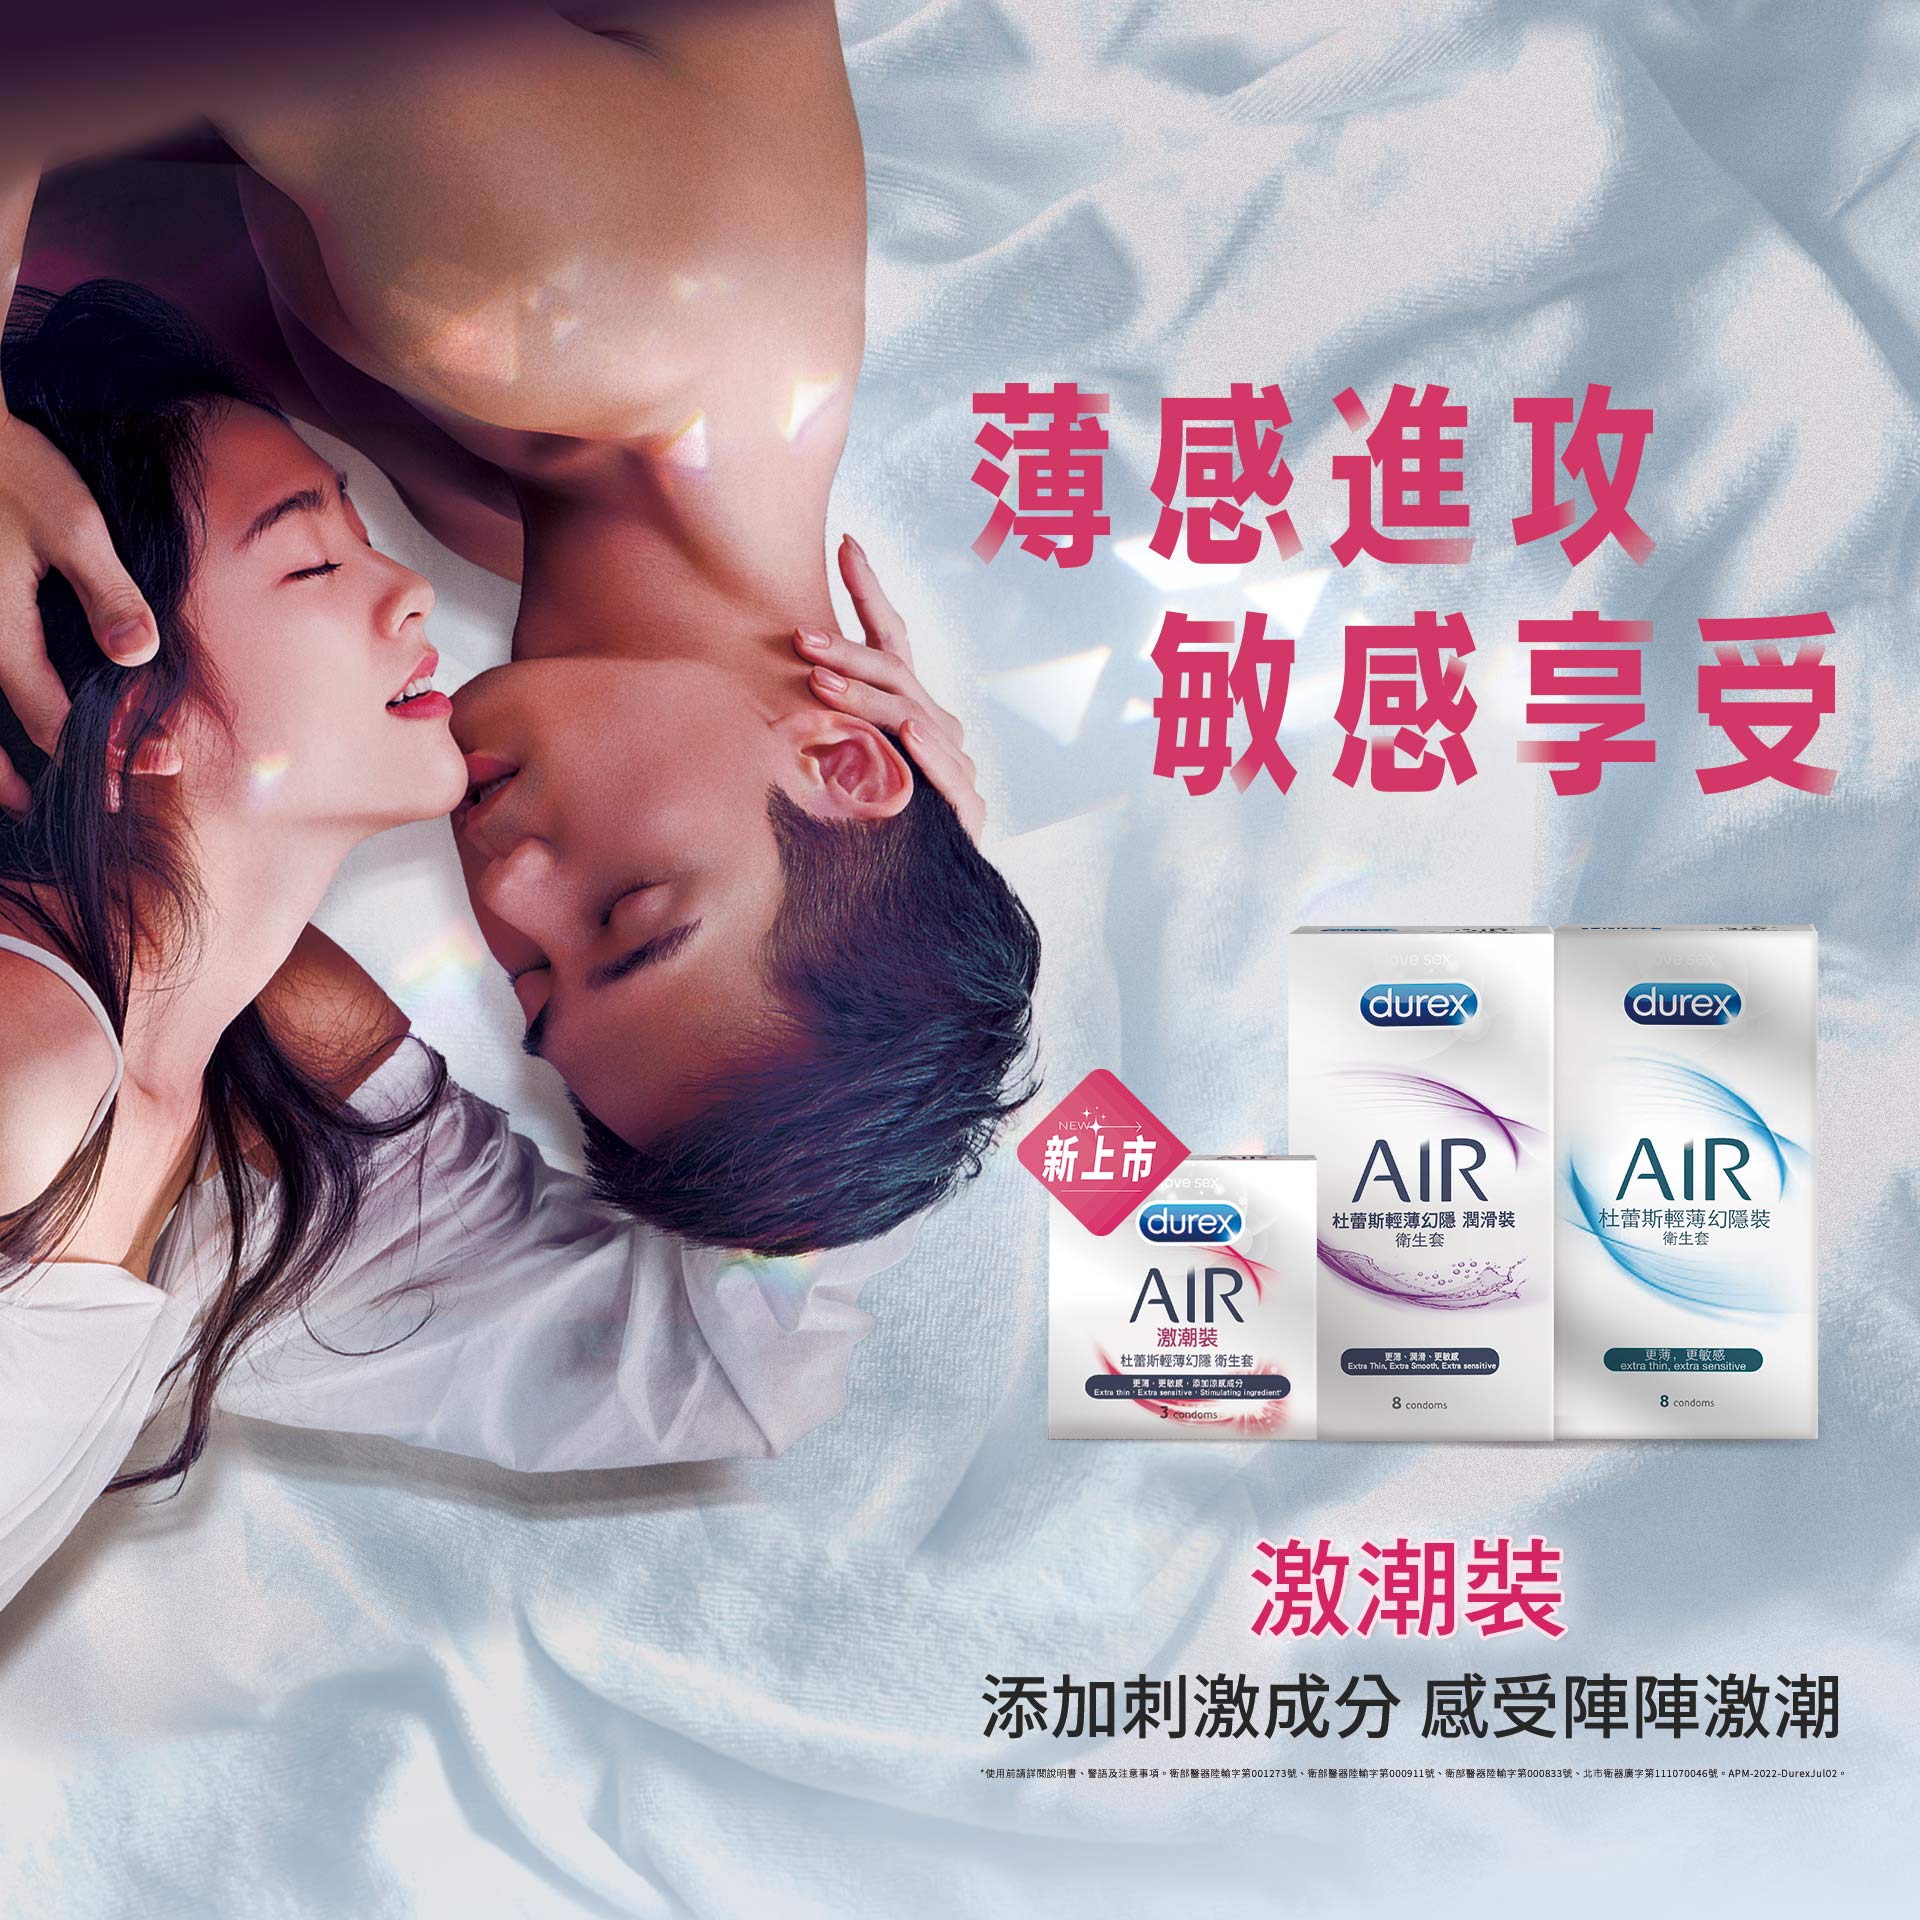 Air激潮裝新上市 感進攻敏感享受 Durex 杜蕾斯臺灣官方旗艦店